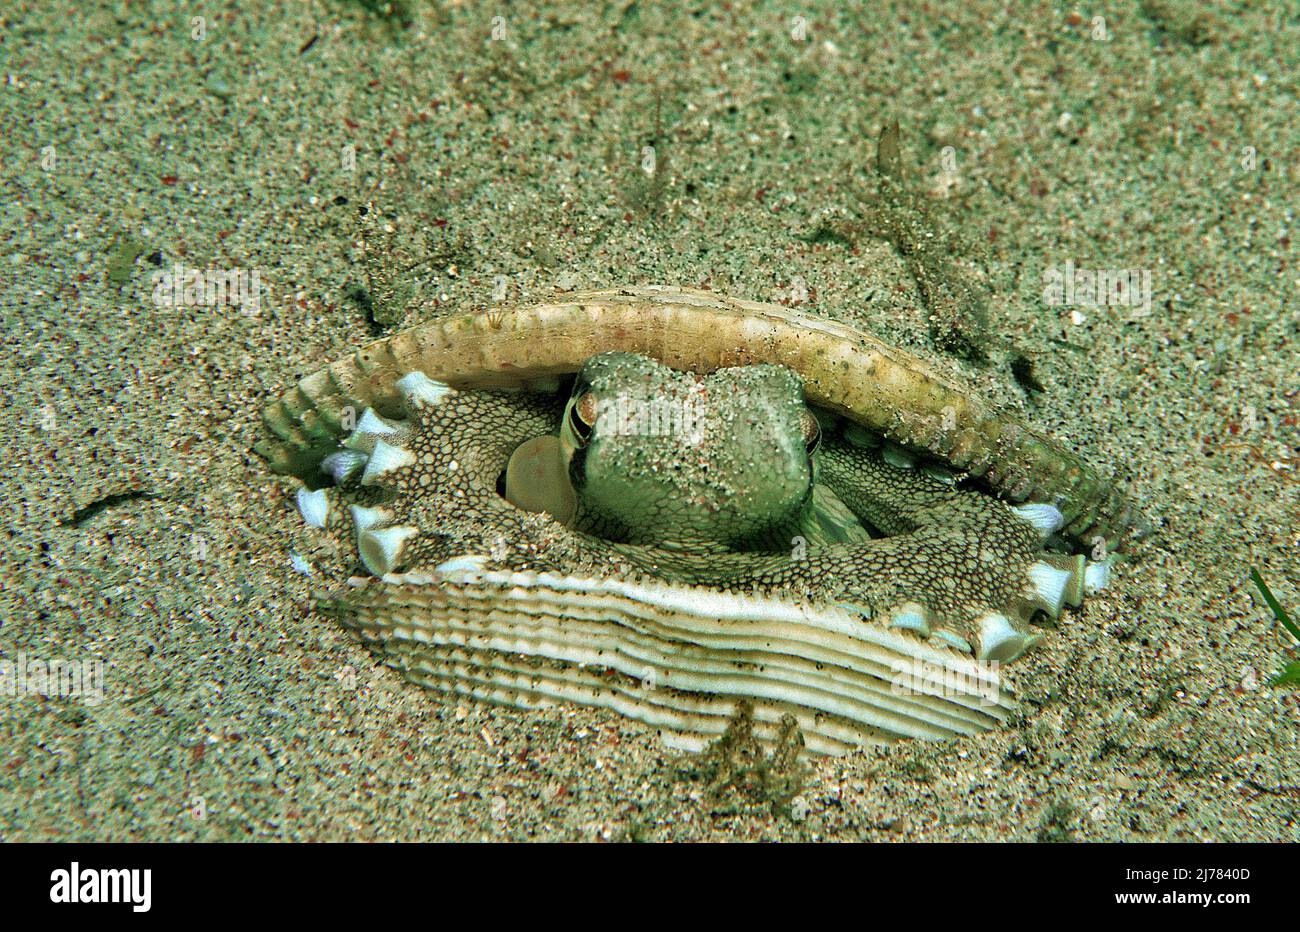 Octopus (Octopus marginatus) à l'état veiné se cachant dans une coquille vide (moule), Puerto Galera, Mindoro, Philippines, Asie Banque D'Images